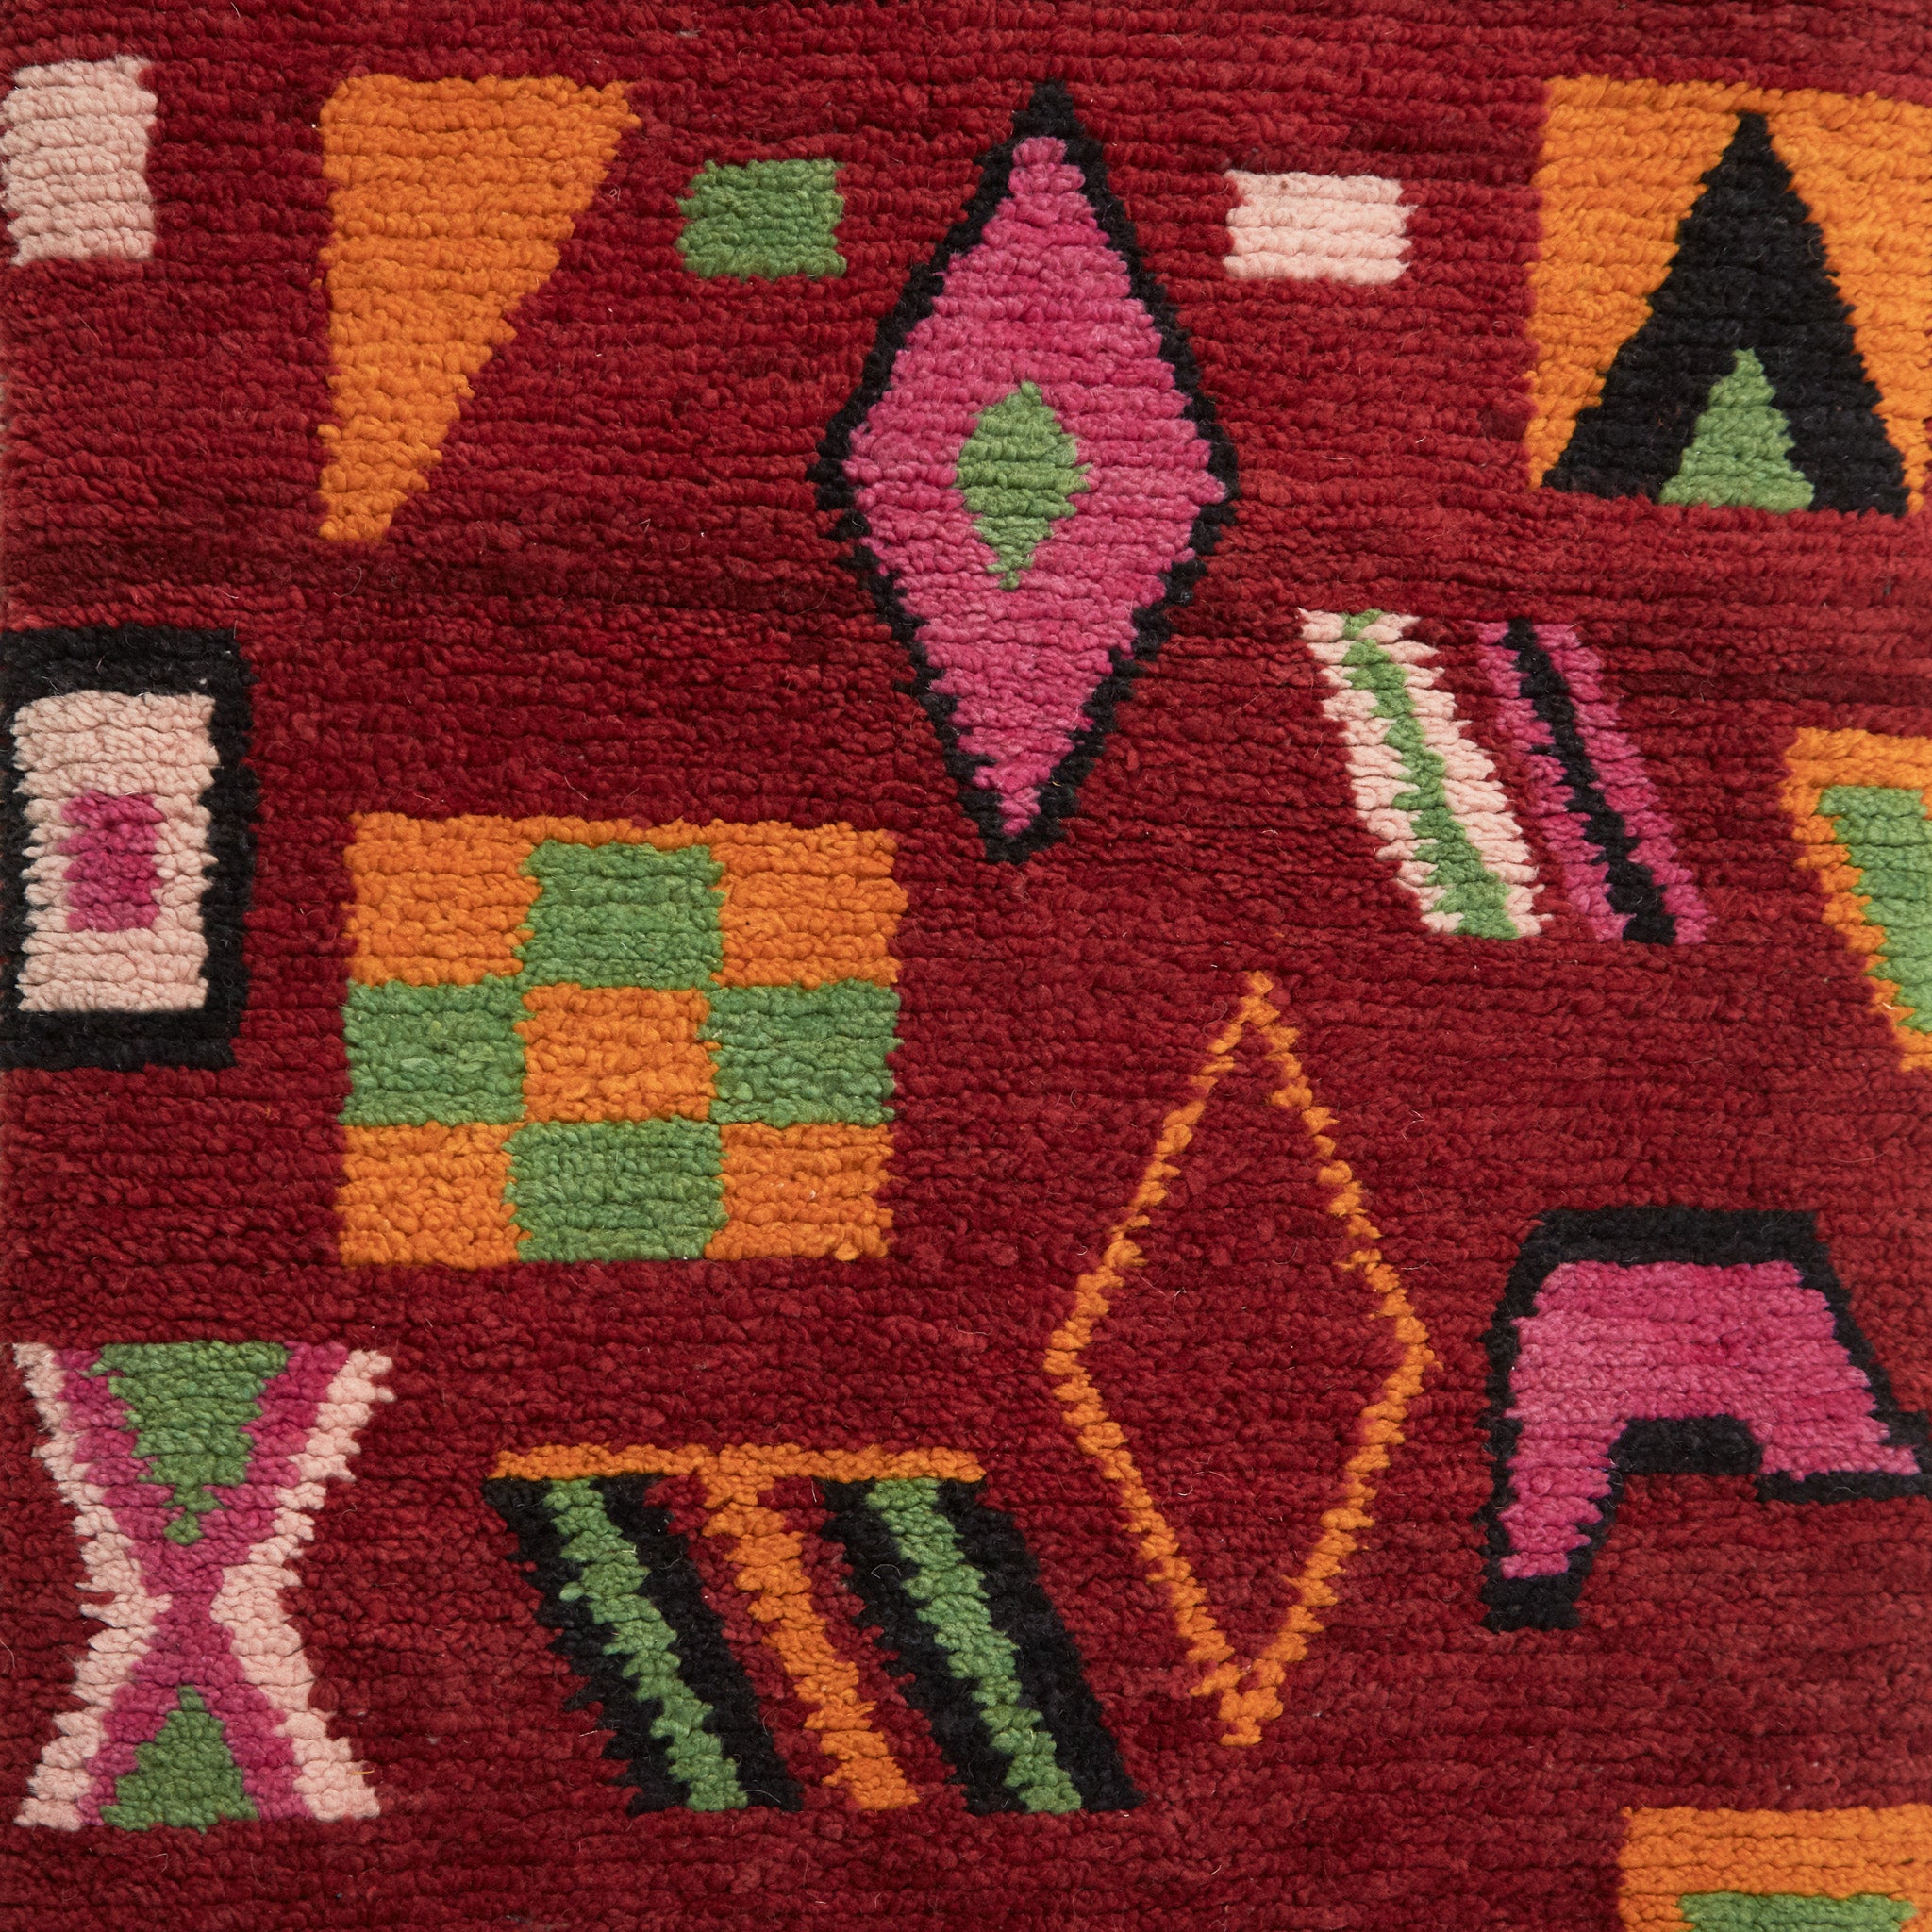 dettaglio dei simboli tradizionali che ricordano delle figure geometriche di un tappeto su base rossa